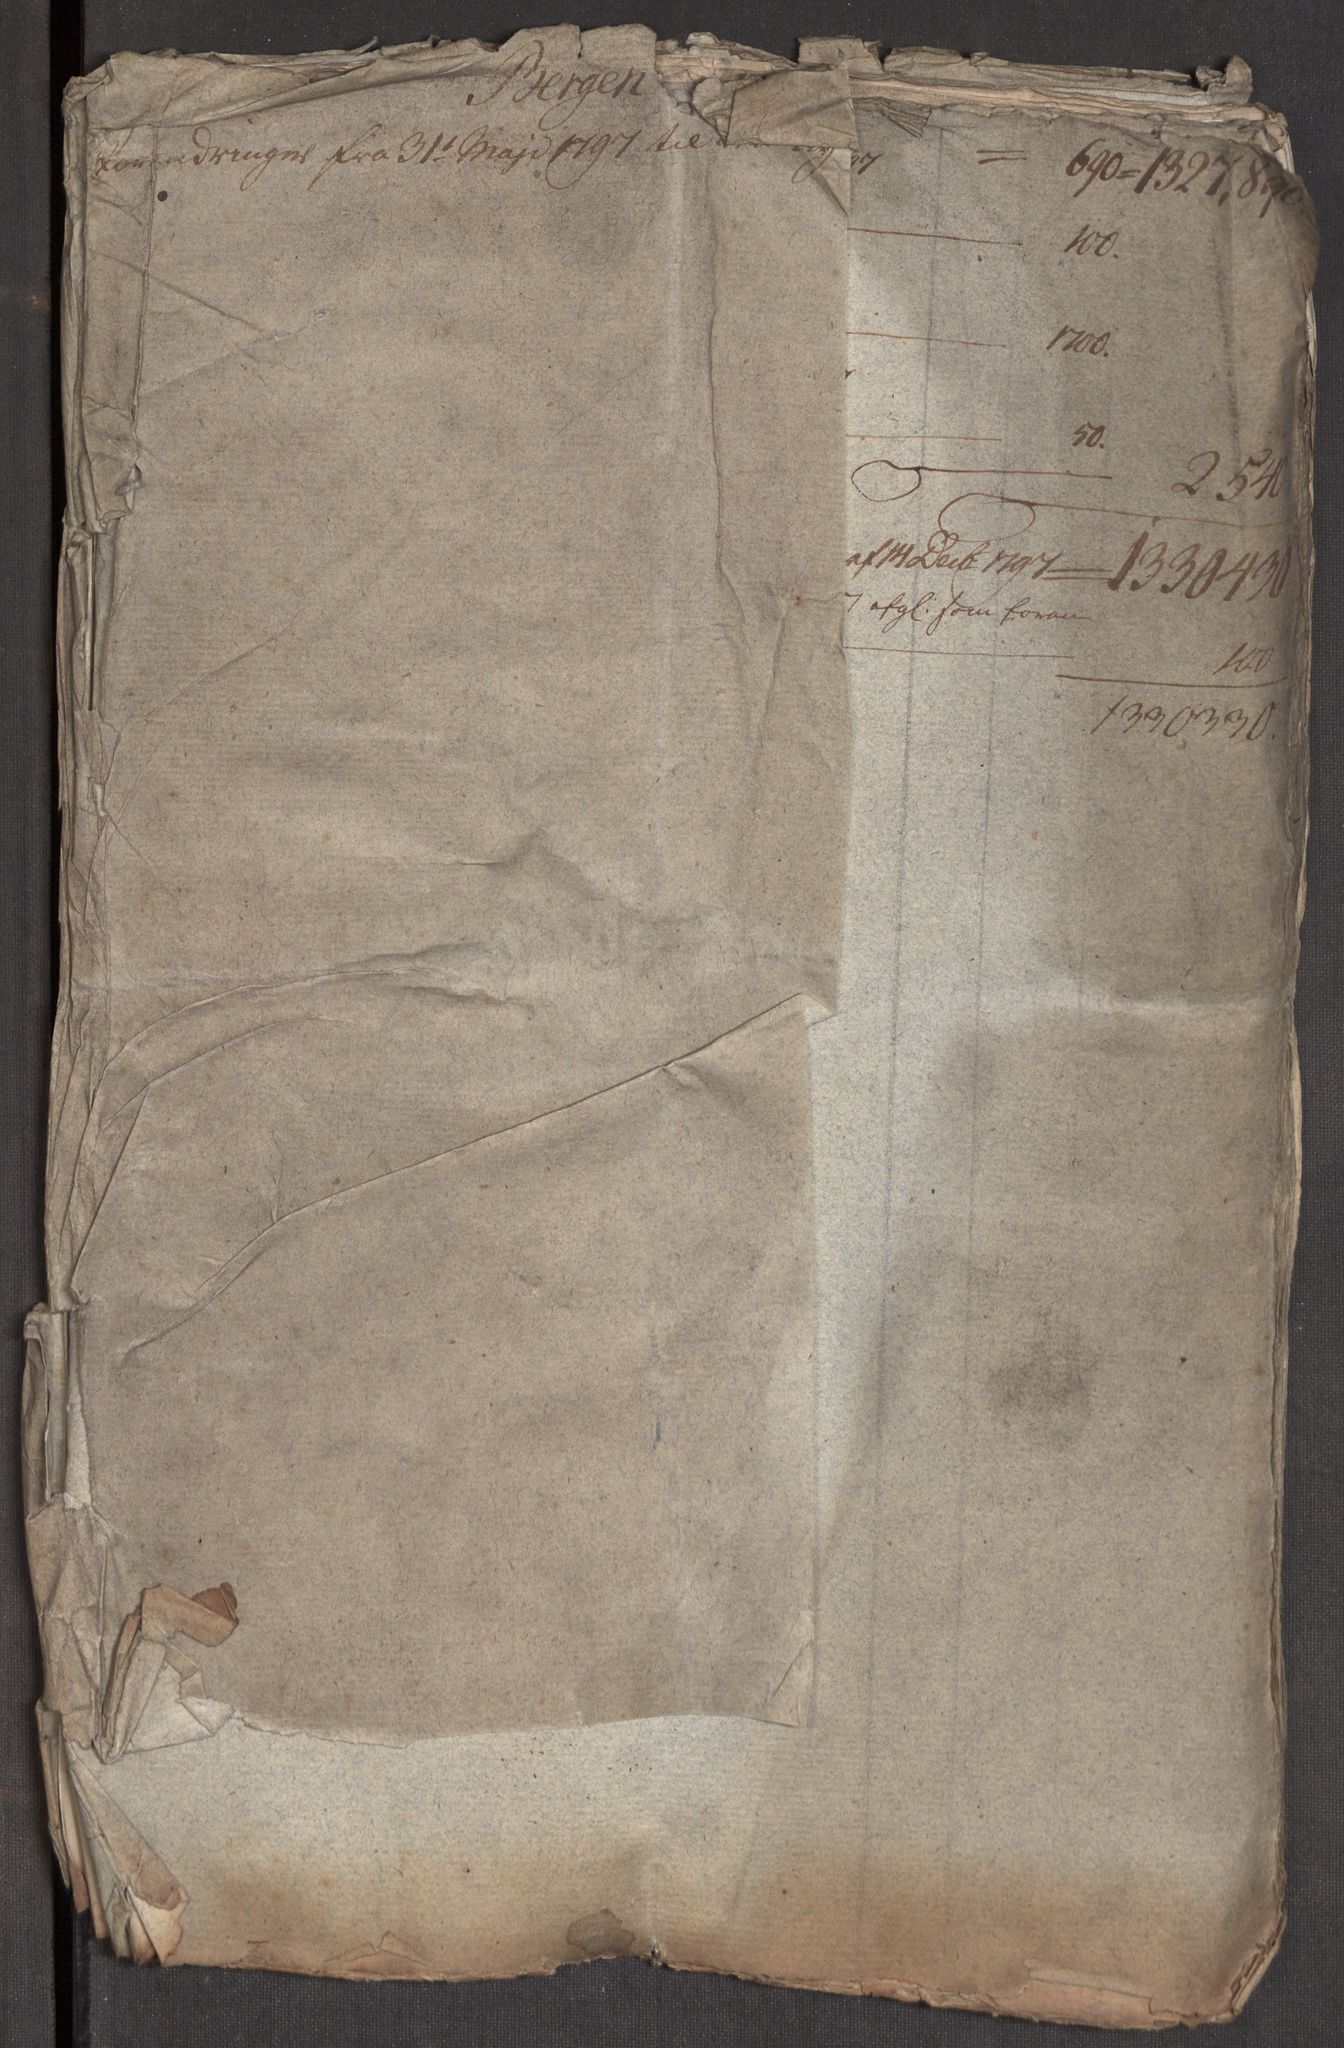 Kommersekollegiet, Brannforsikringskontoret 1767-1814, RA/EA-5458/F/Fa/L0005/0002: Bergen / Dokumenter, 1787-1797